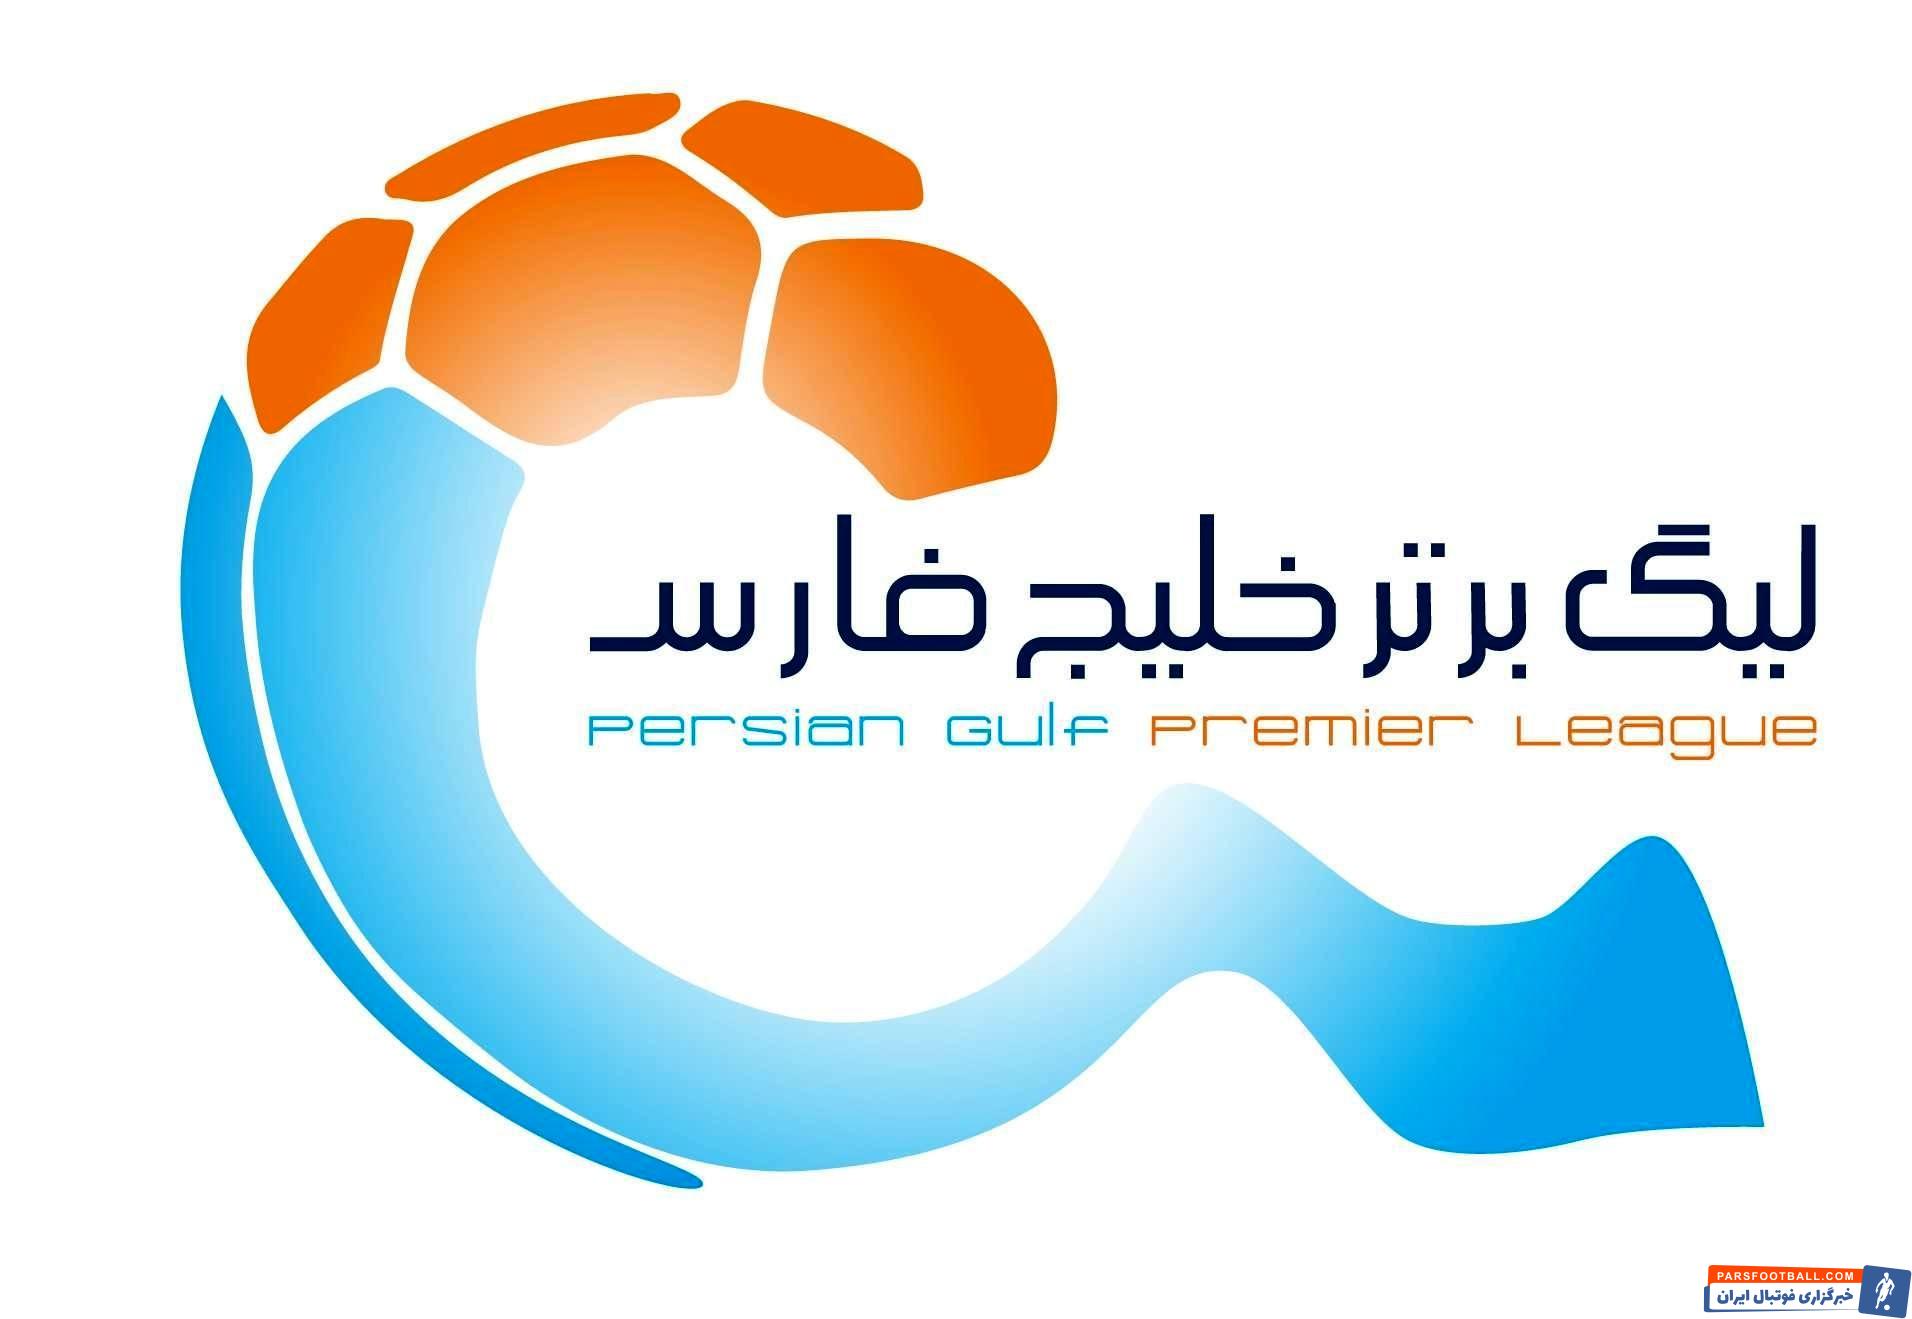 تیم های لیگ برتری حاضر در لیگ برتر فوتبال ایران ، برای حضوری موفق در فصل آینده لیگ برتر ، در حال جذب بازیکنان مد نظرشان از بازر نقل و انتقالات هستند.